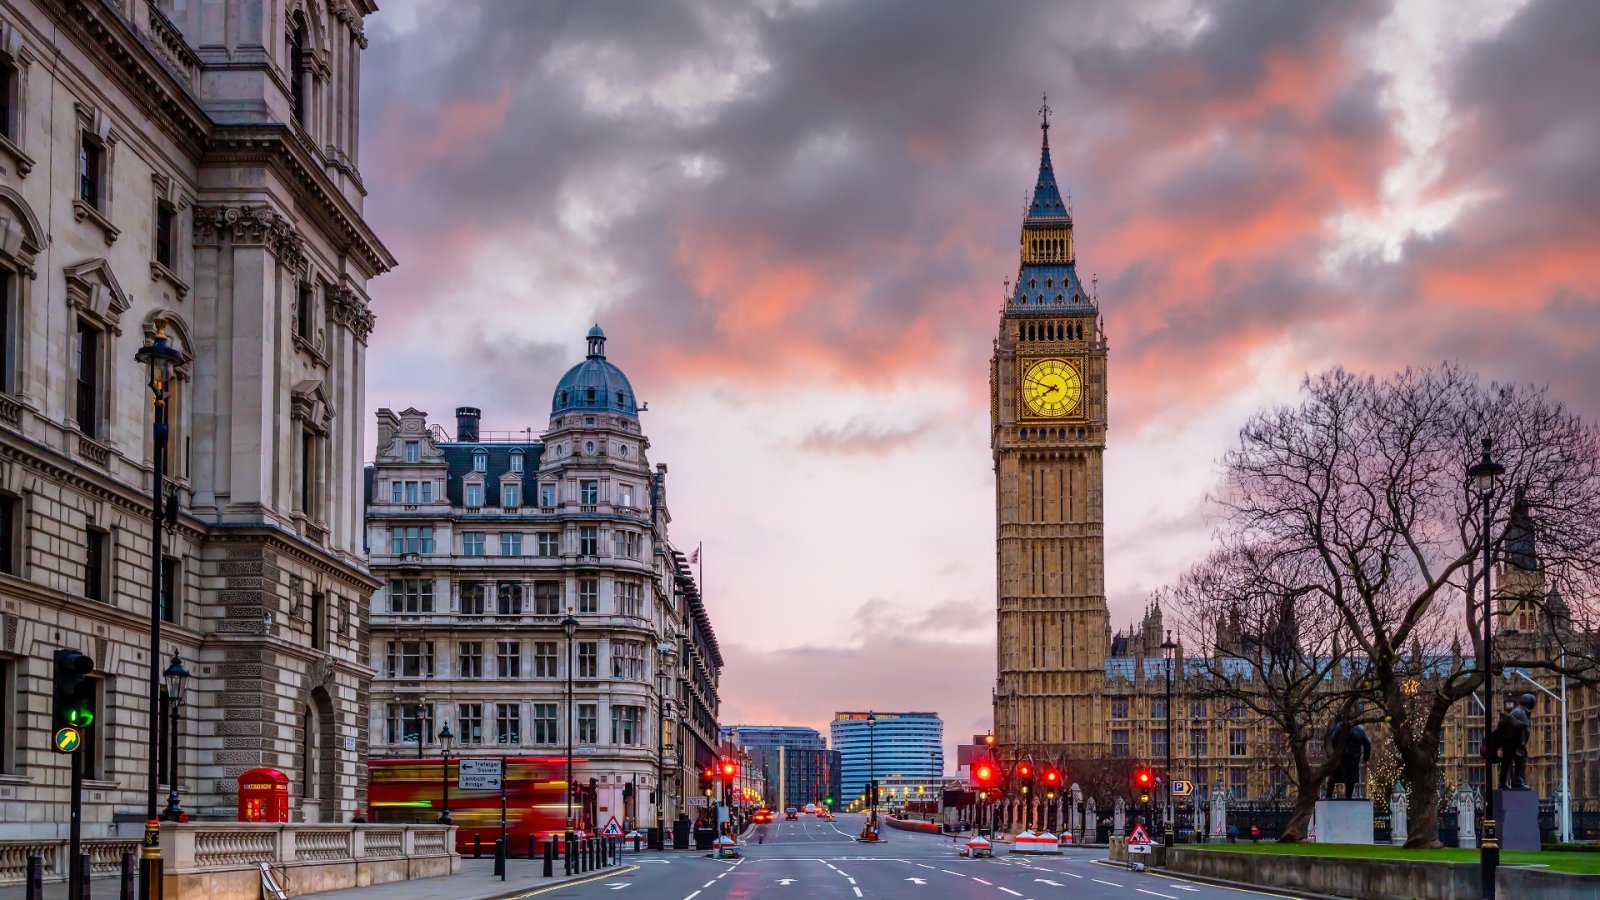 런던에서 무료로 할 일을 찾고 계십니까? 영국 수도에서 무료로 즐길 수 있는 10가지 활동을 소개합니다.